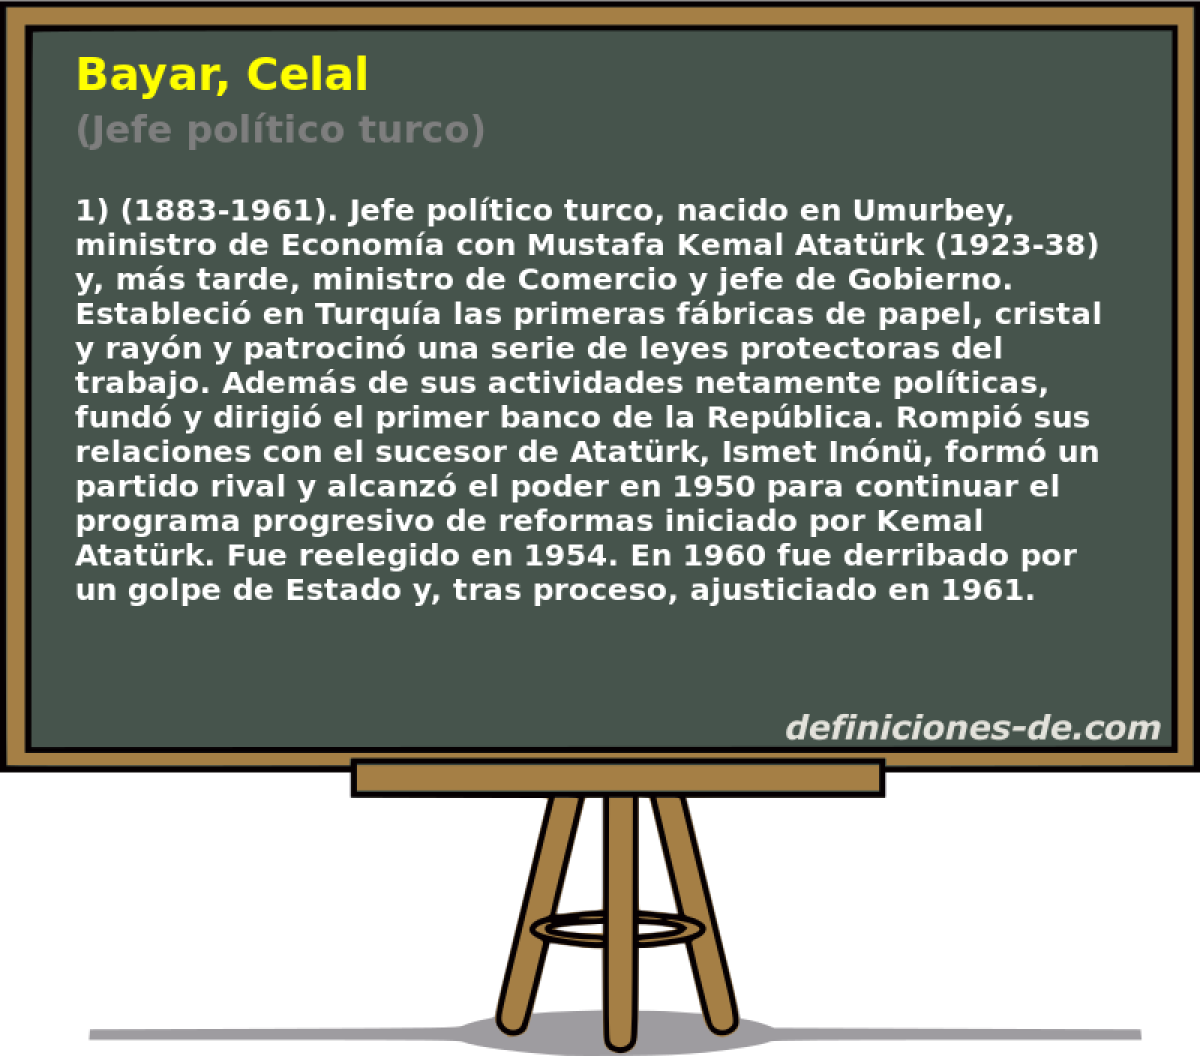 Bayar, Celal (Jefe poltico turco)